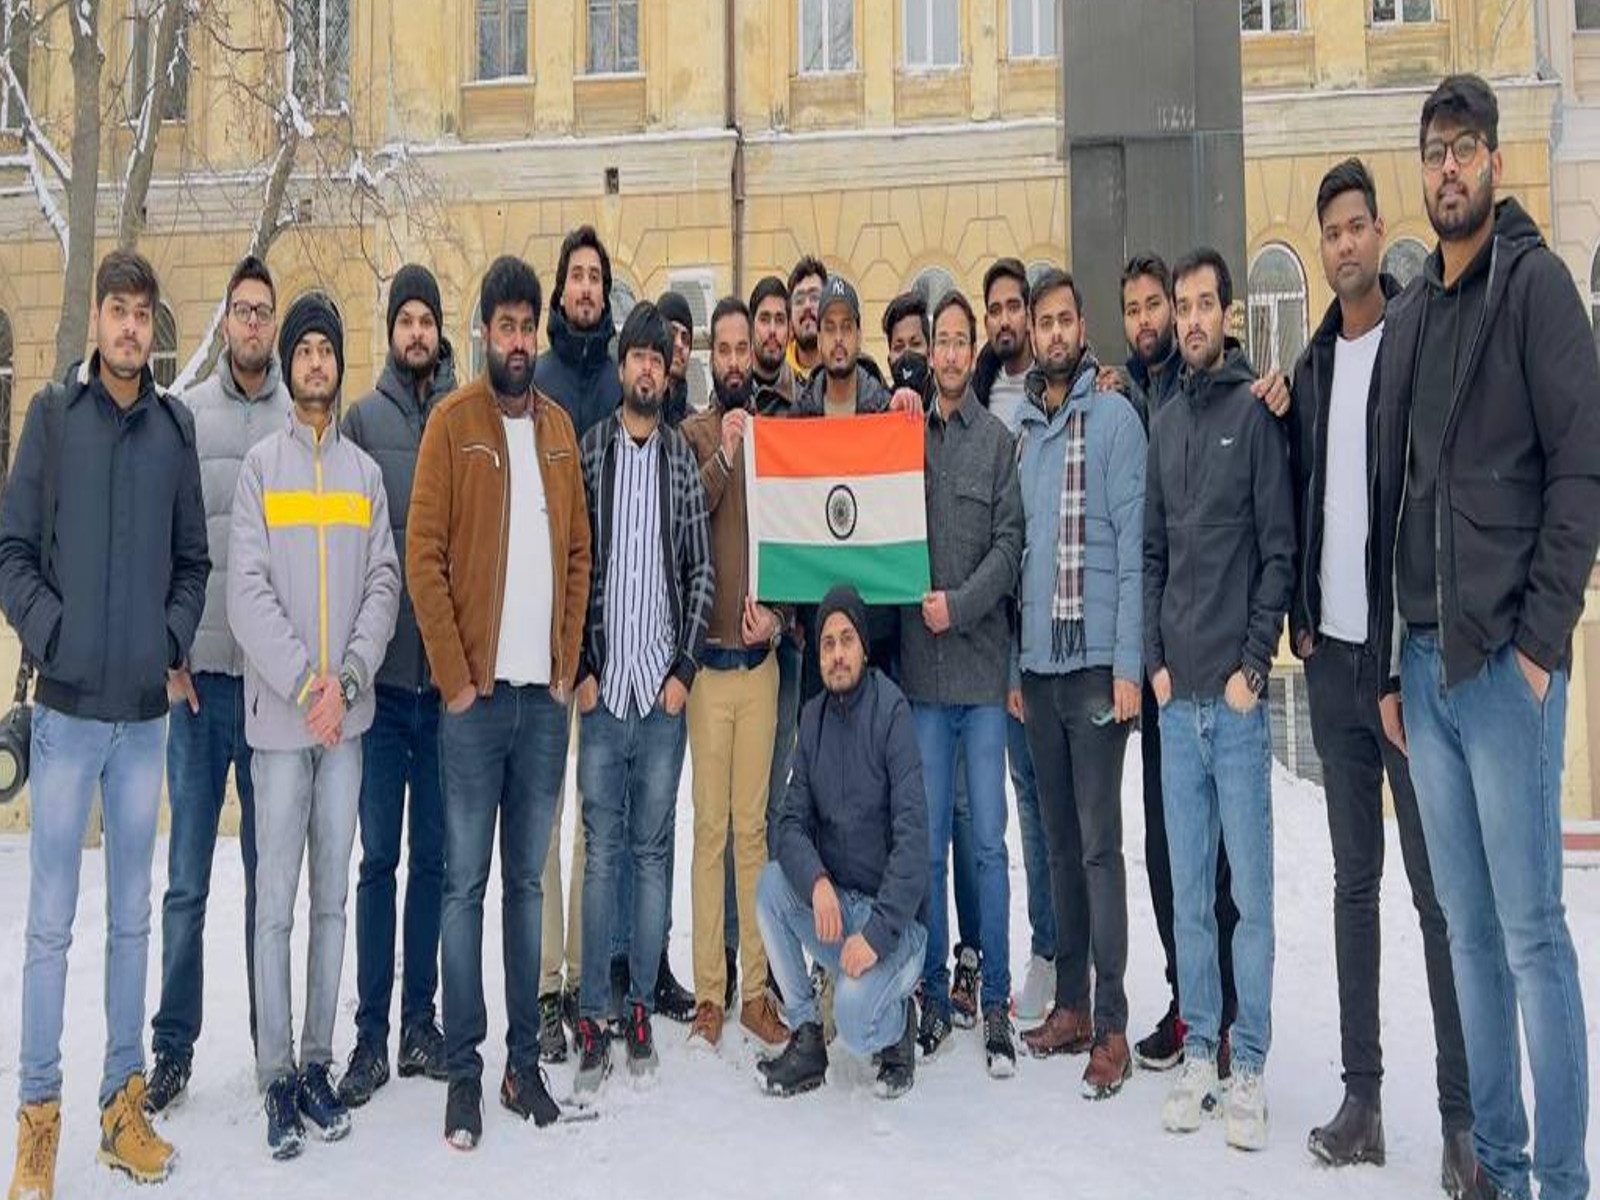 Why indian students go to ukraine for study and how well they are now - मेडिकल की बेहद सस्ती पढ़ाई के लिए यूक्रेन जाते हैं भारतीय छात्र, जानिए इस खूबसूरत देश के